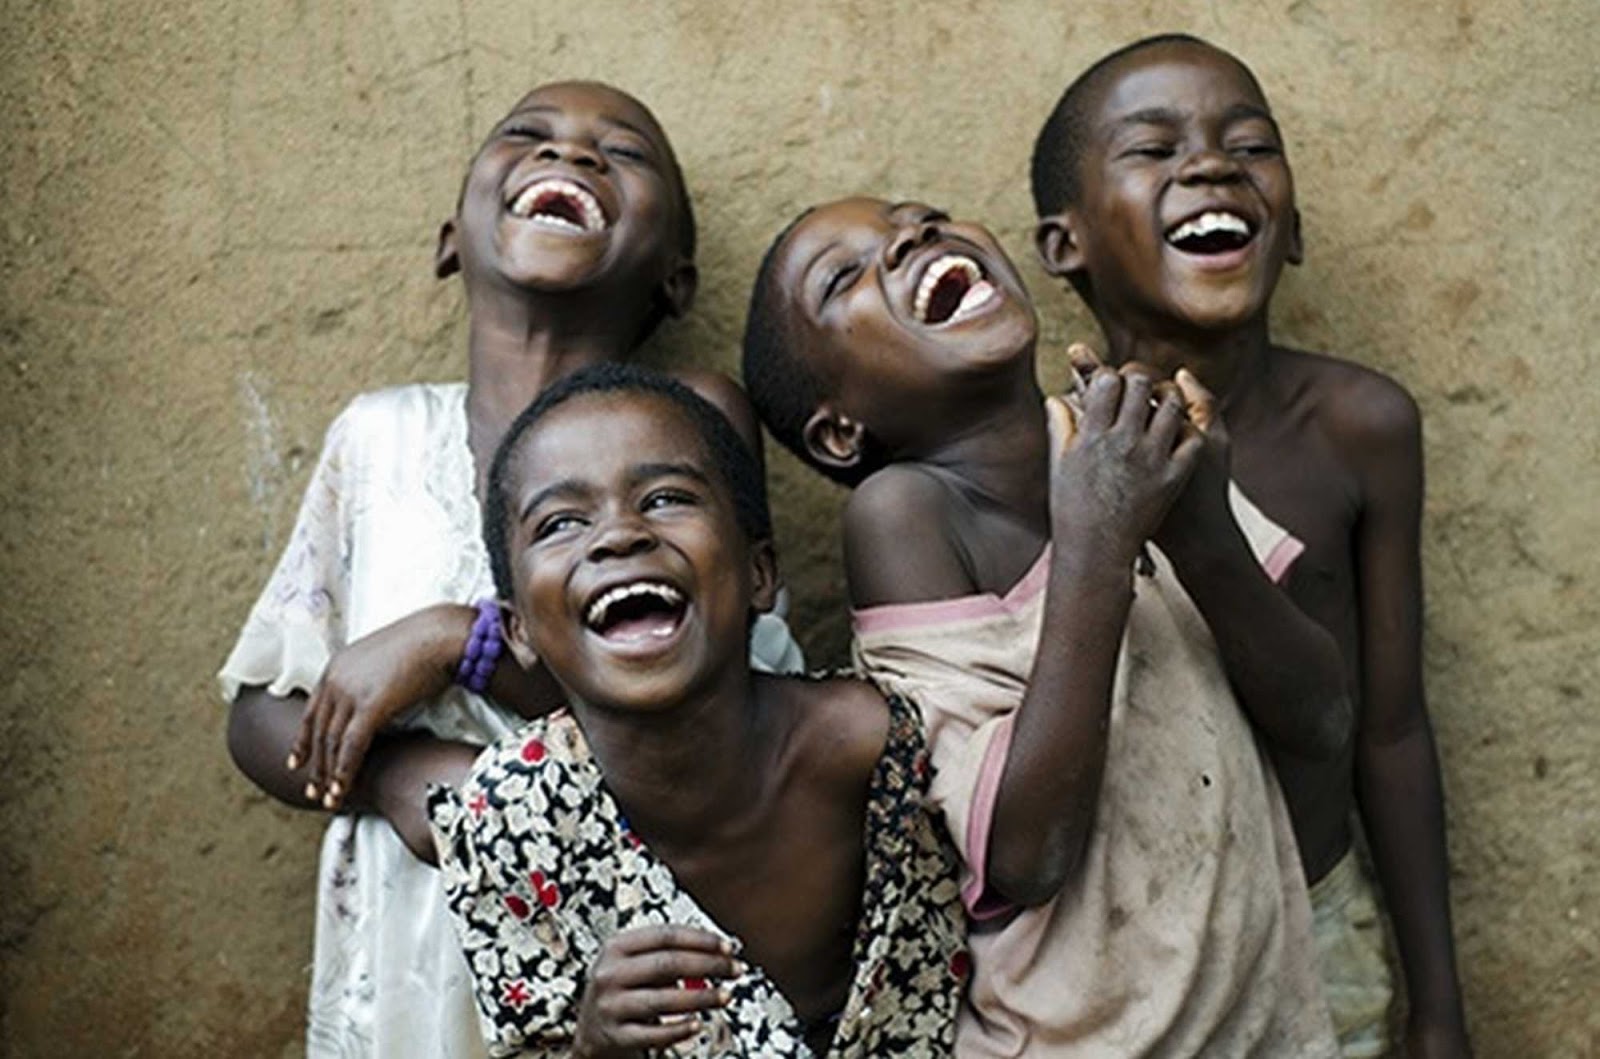 Las Fotos Mas Alucinantes: niños de africa